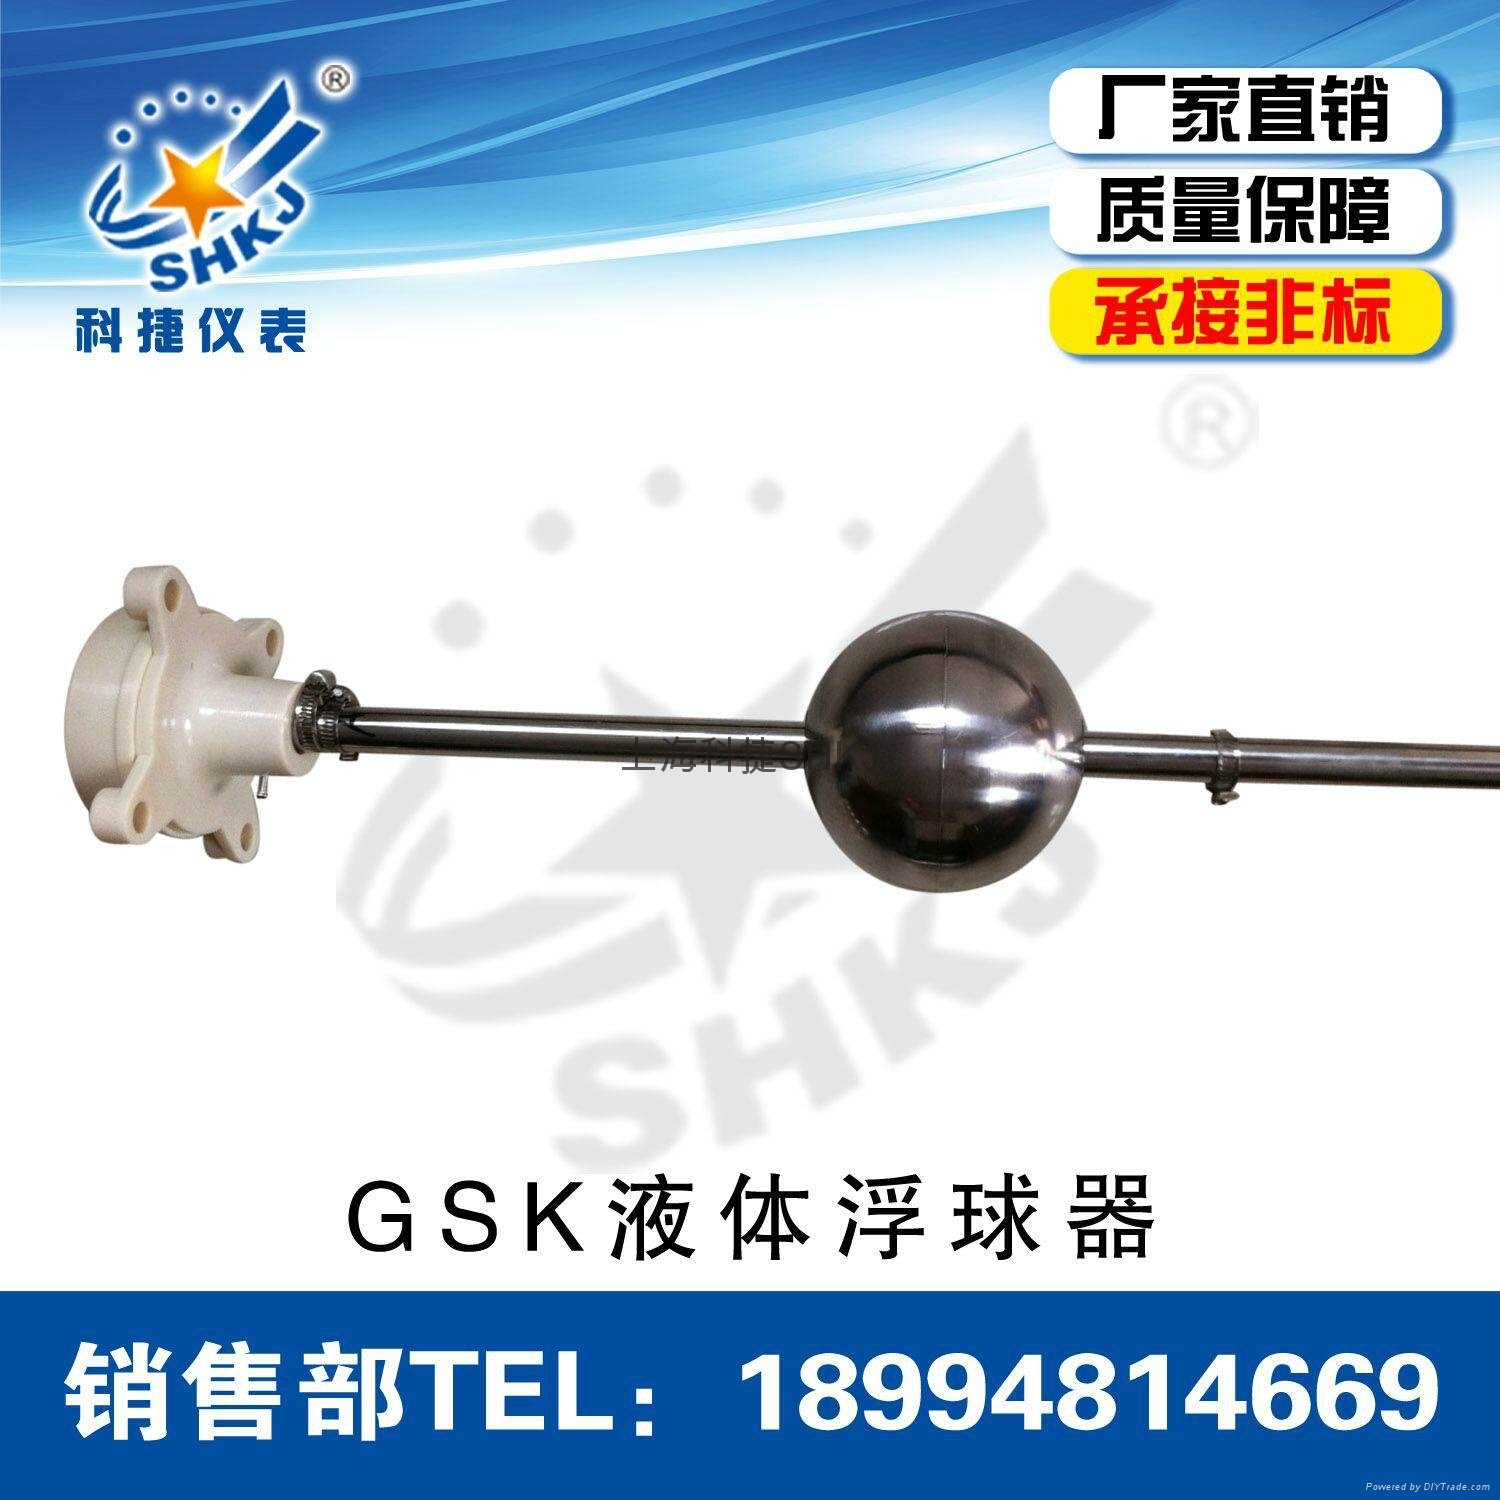 GSK-1A1B1C YW-67干簧管液位控制器浮球液位開關液位傳感器液位計 2